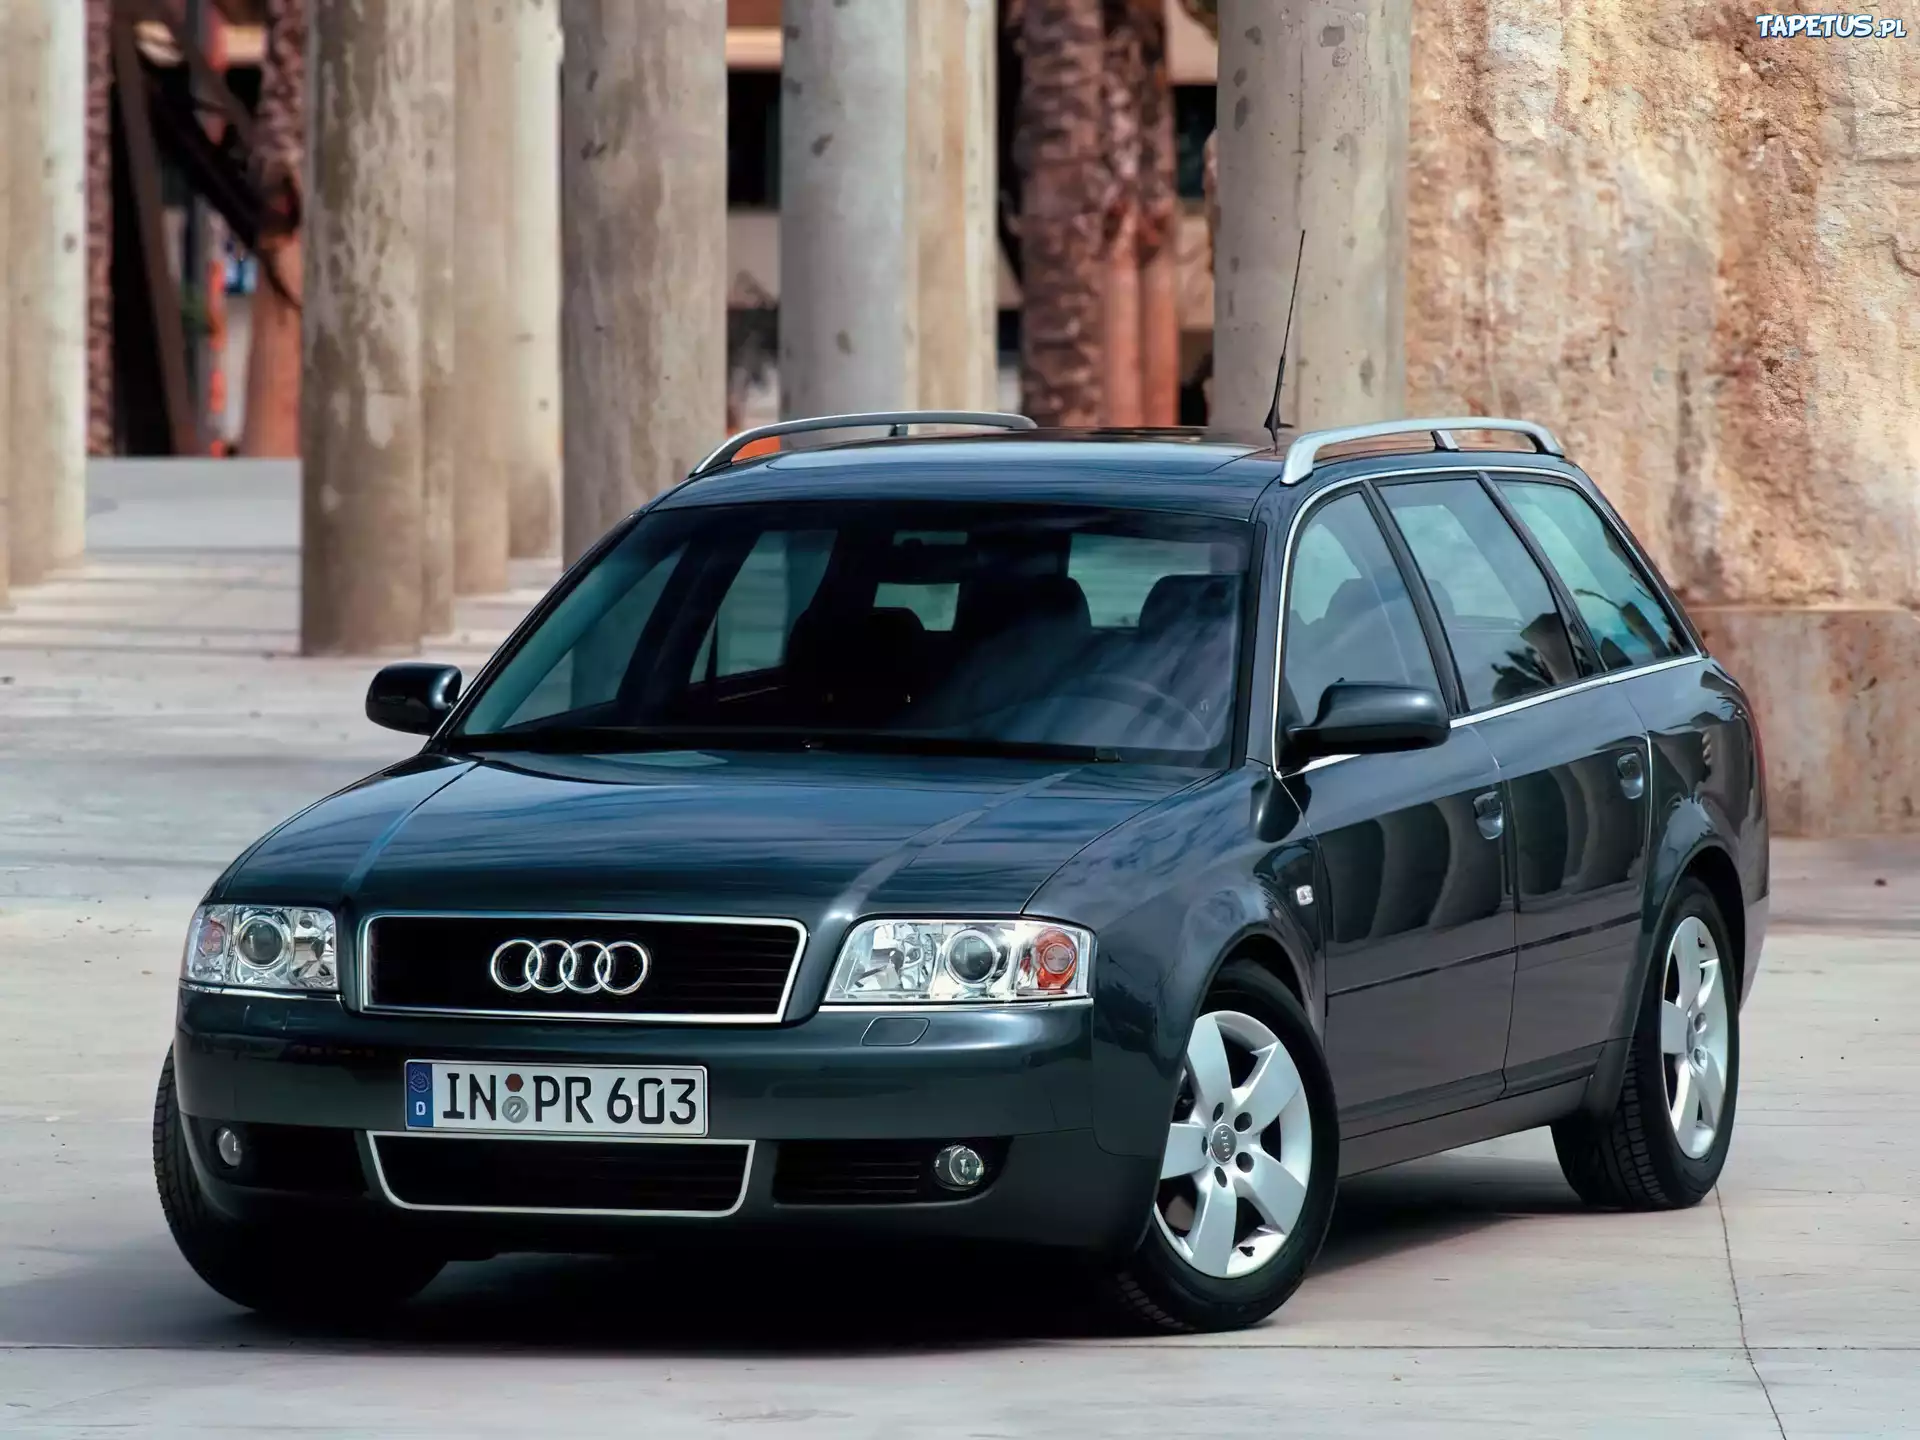 Ауди универсал 2002. Audi a6 c5 универсал. Ауди а6 Авант 2001. Ауди а6 Авант 2001 универсал. Audi a6 2001.